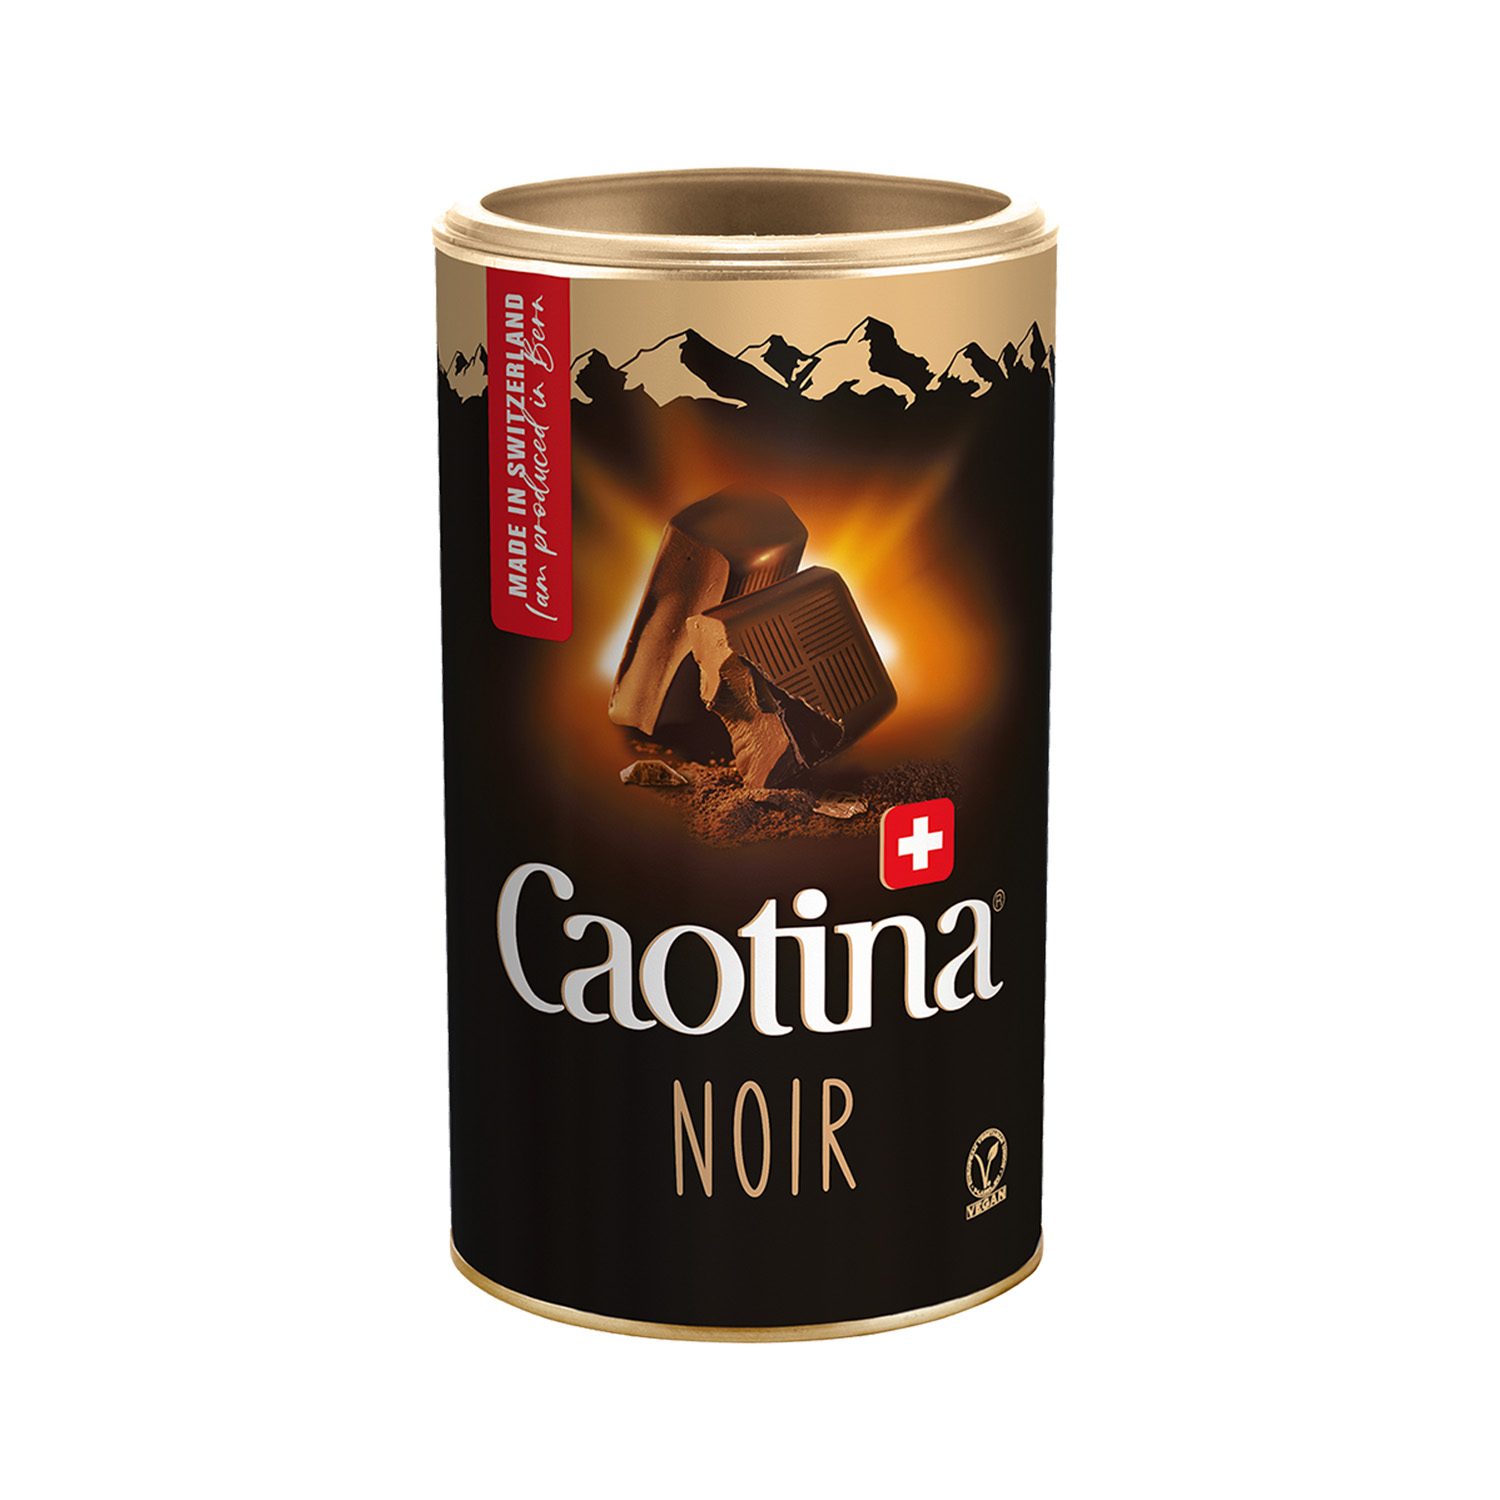 Caotina Noir švýcarský kakaový nápoj 500 g